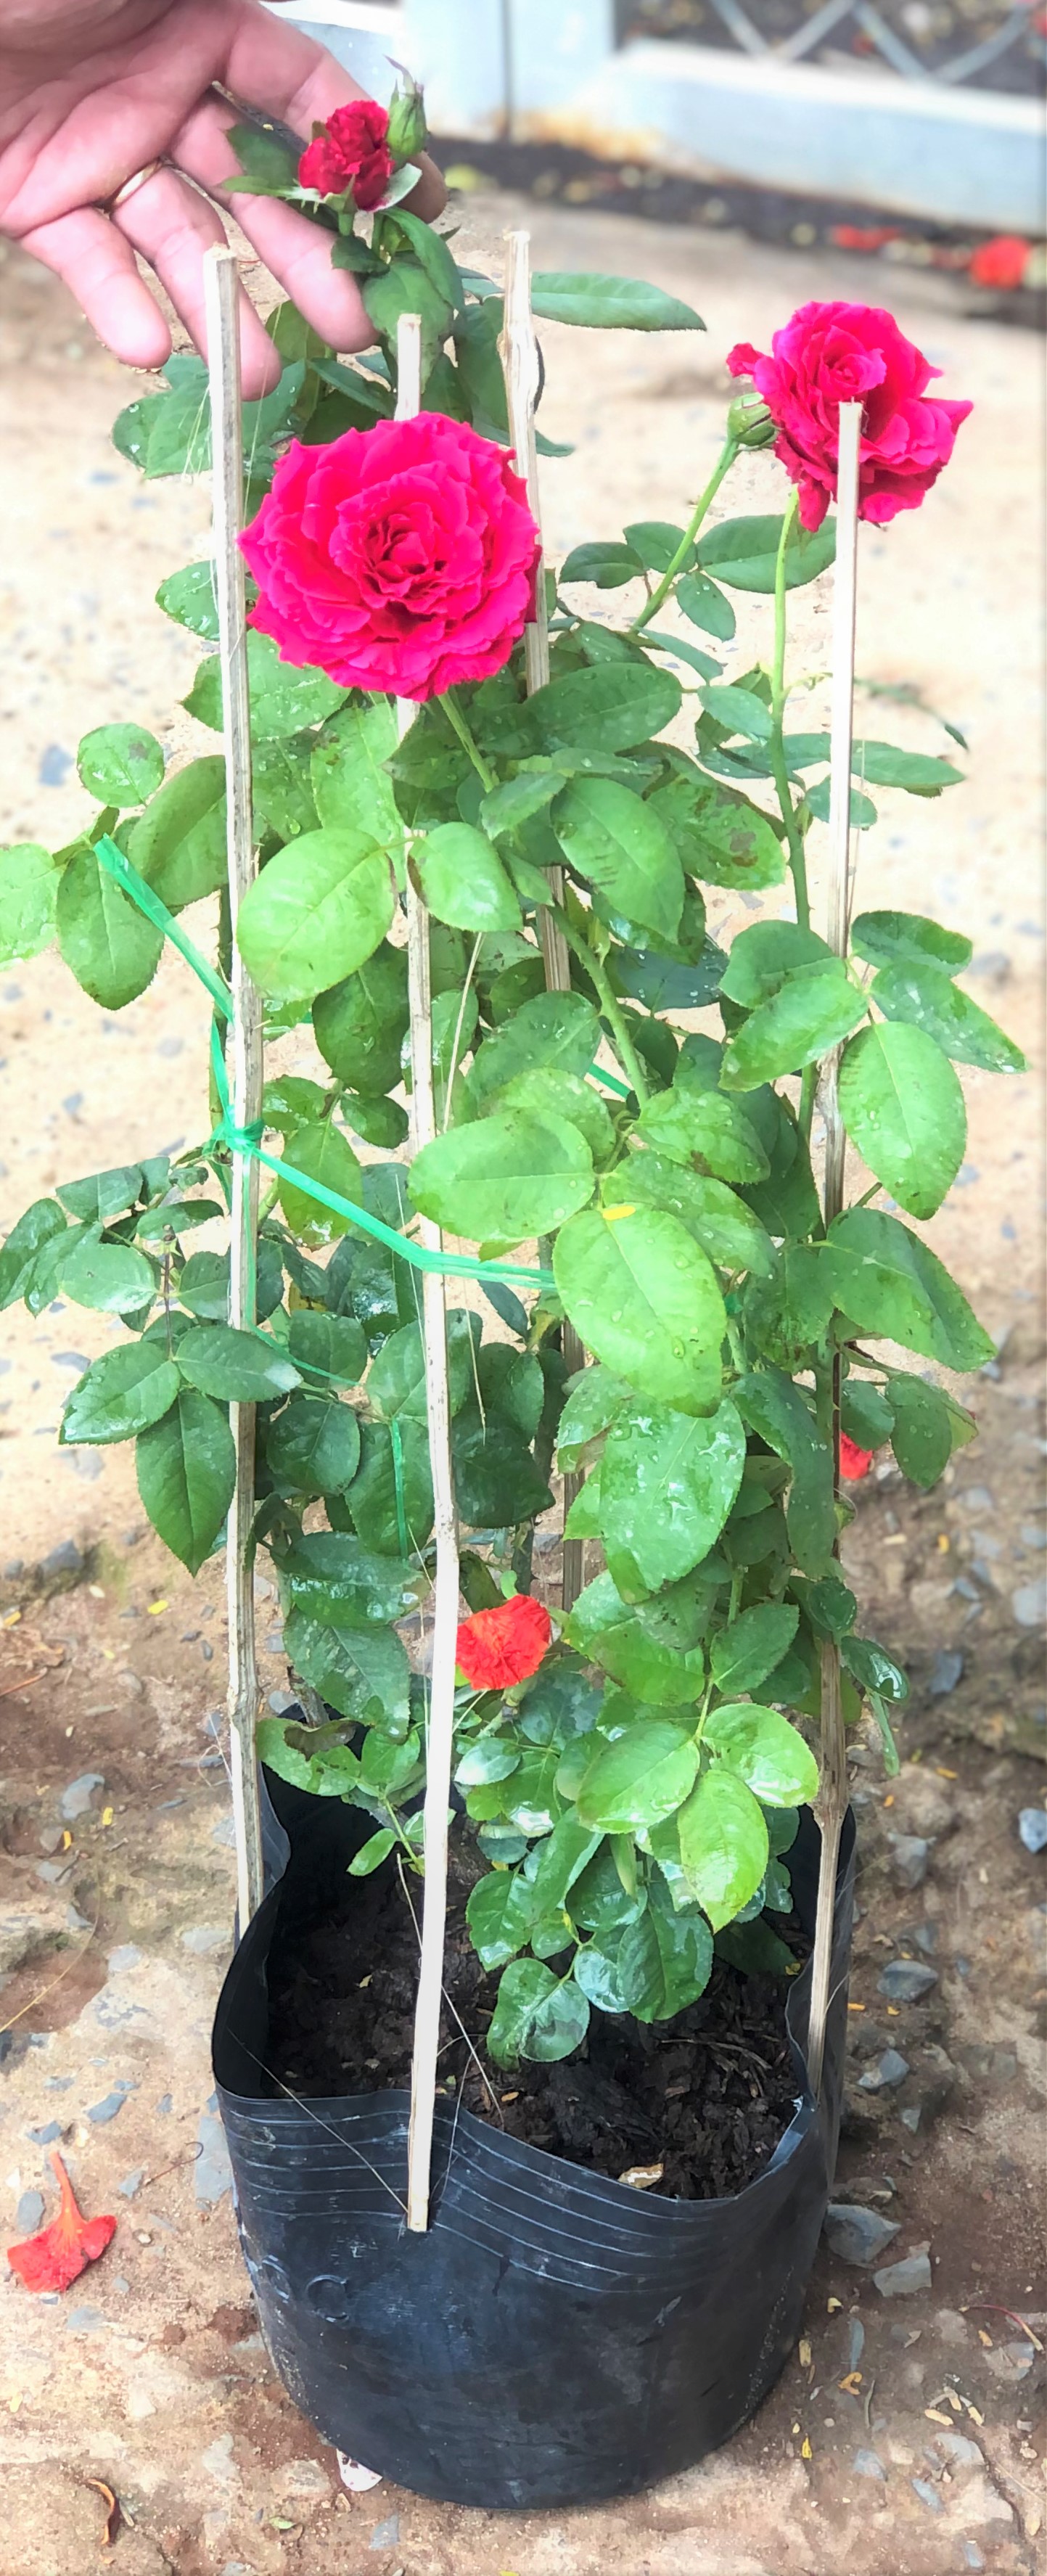 Cây hoa hồng Nhung chậu cao 50 - 70 cm